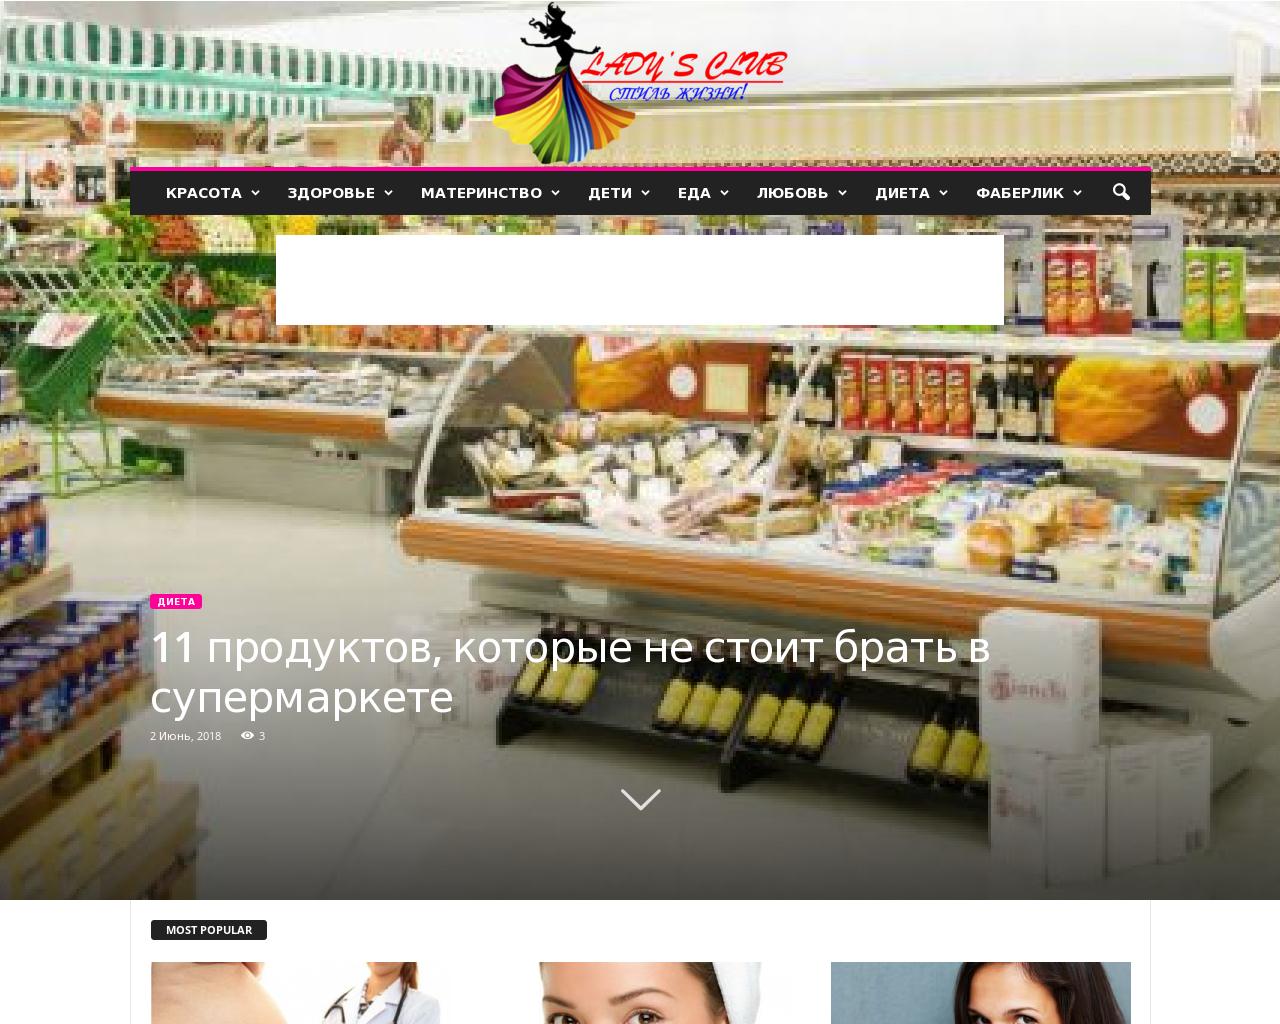 Изображение сайта onmlm.ru в разрешении 1280x1024